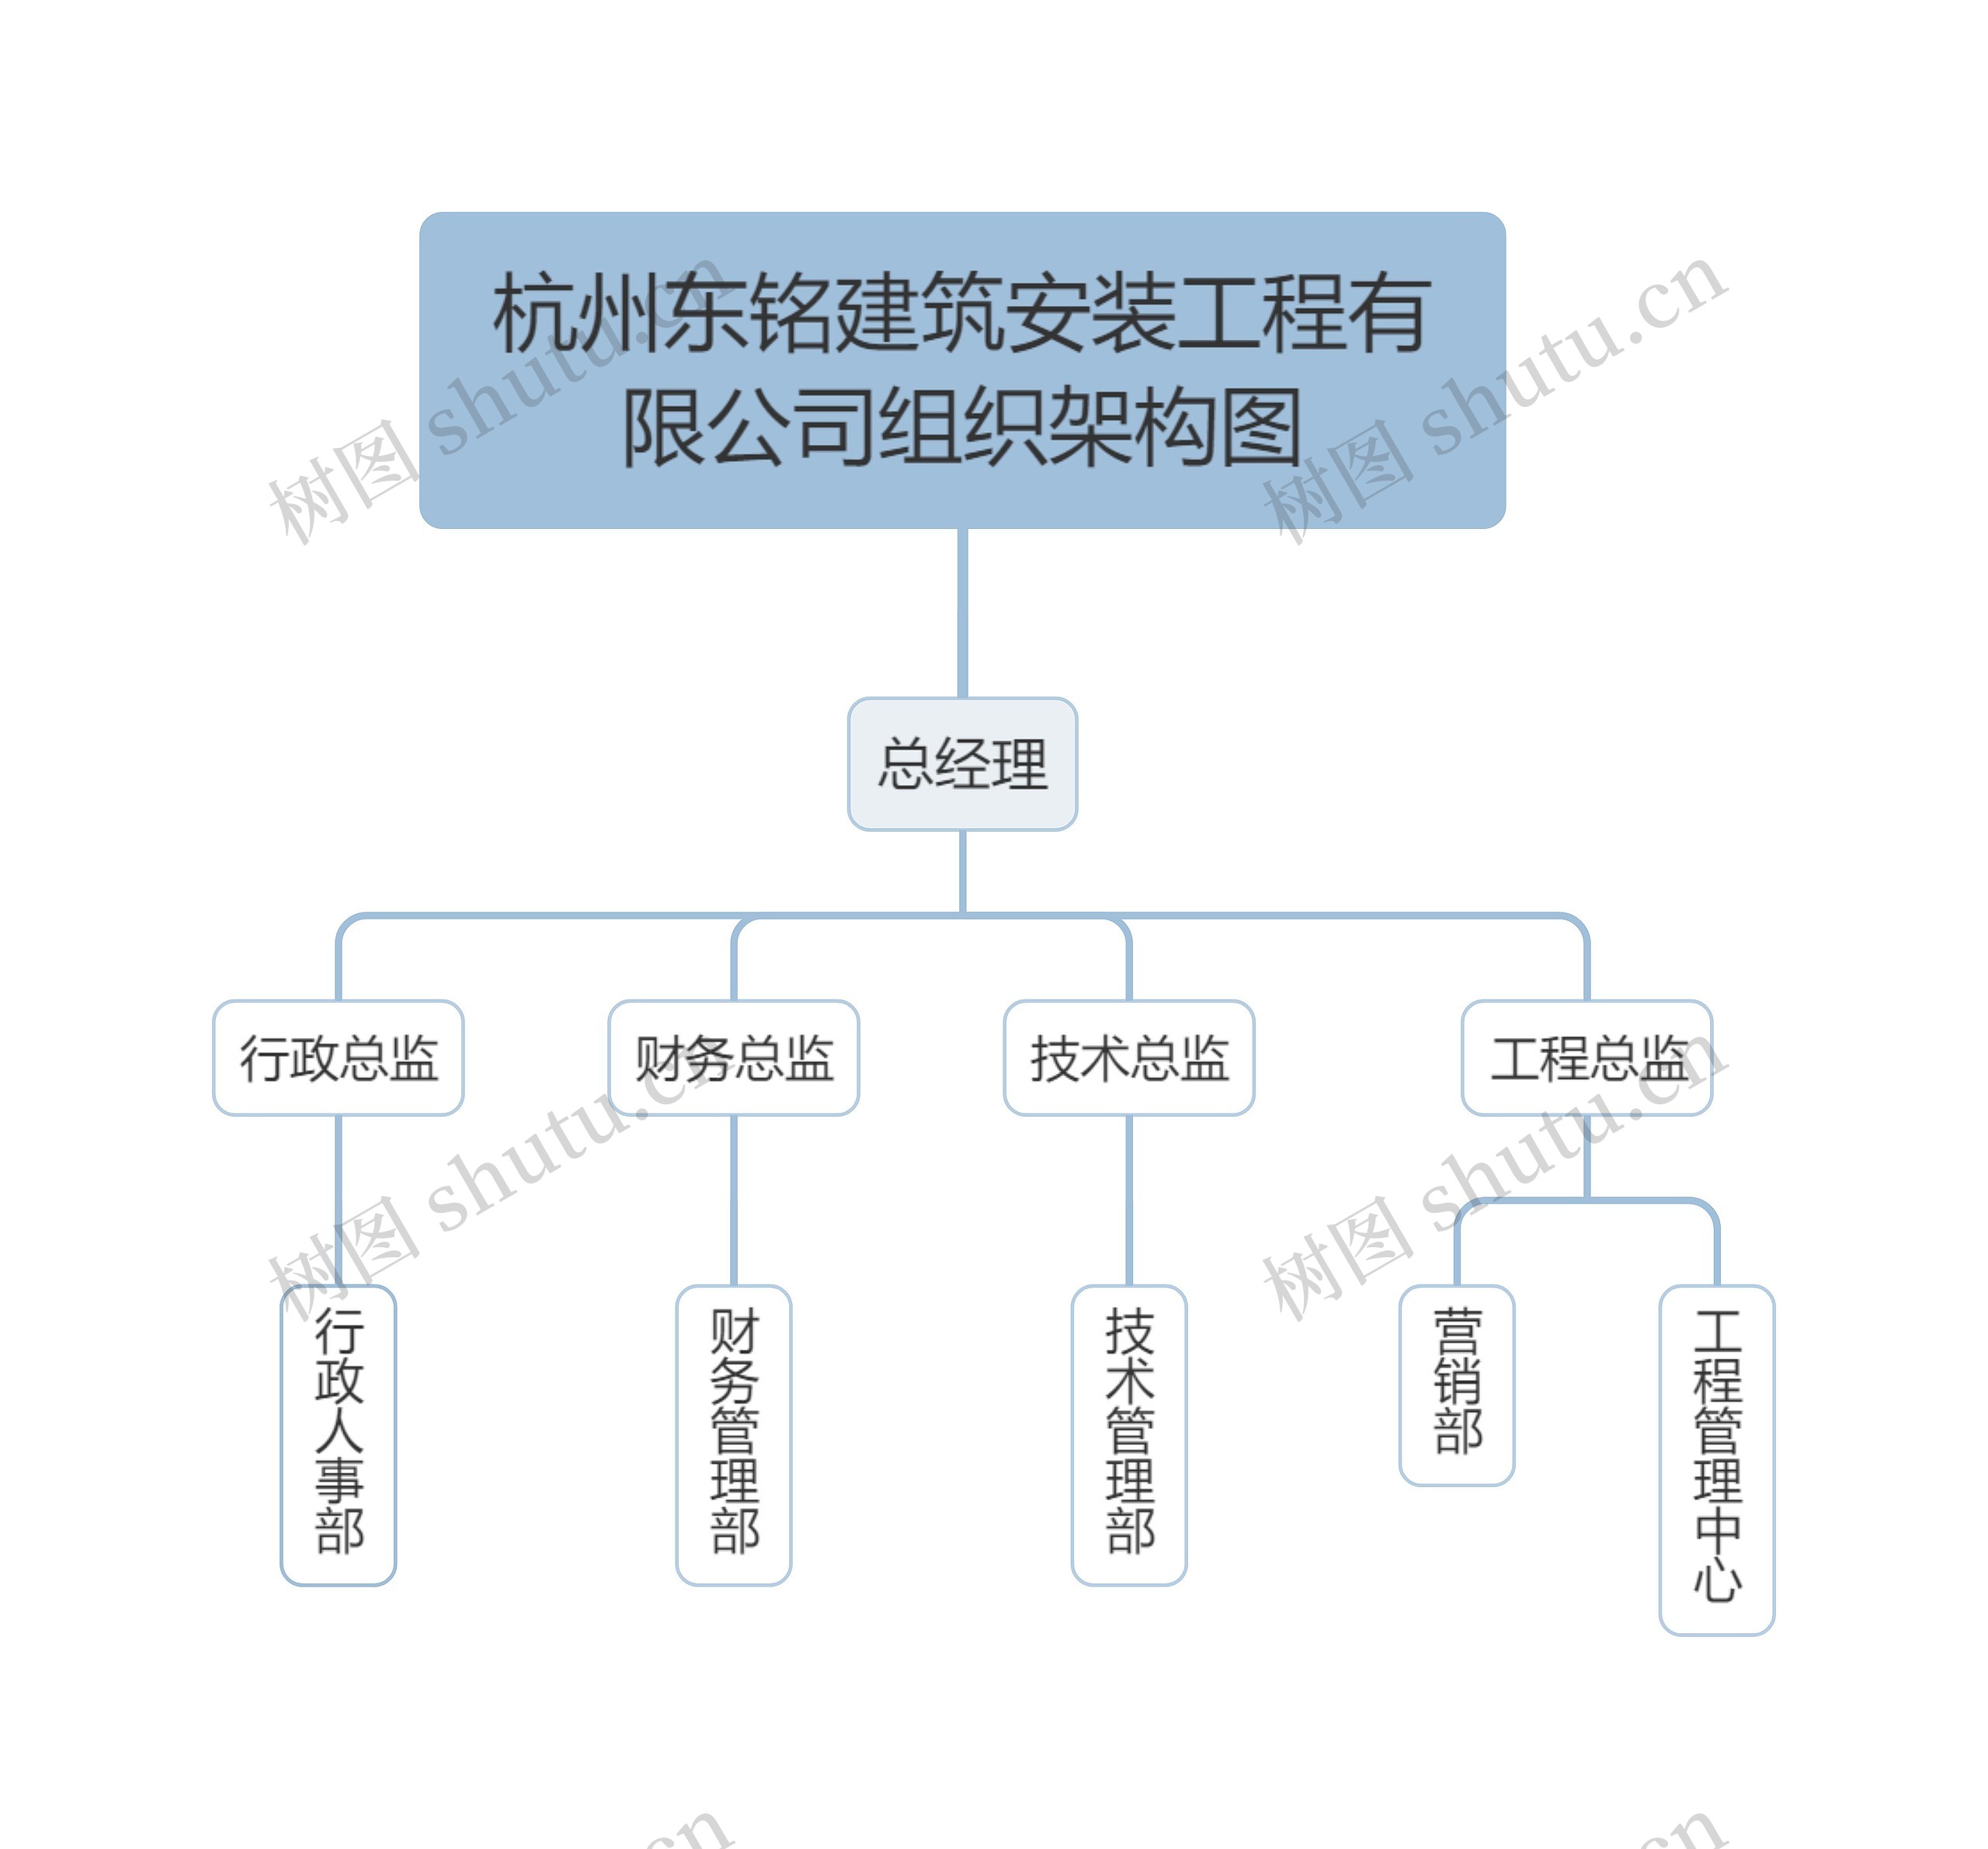 杭州东铭建筑安装工程有限公司组织架构图